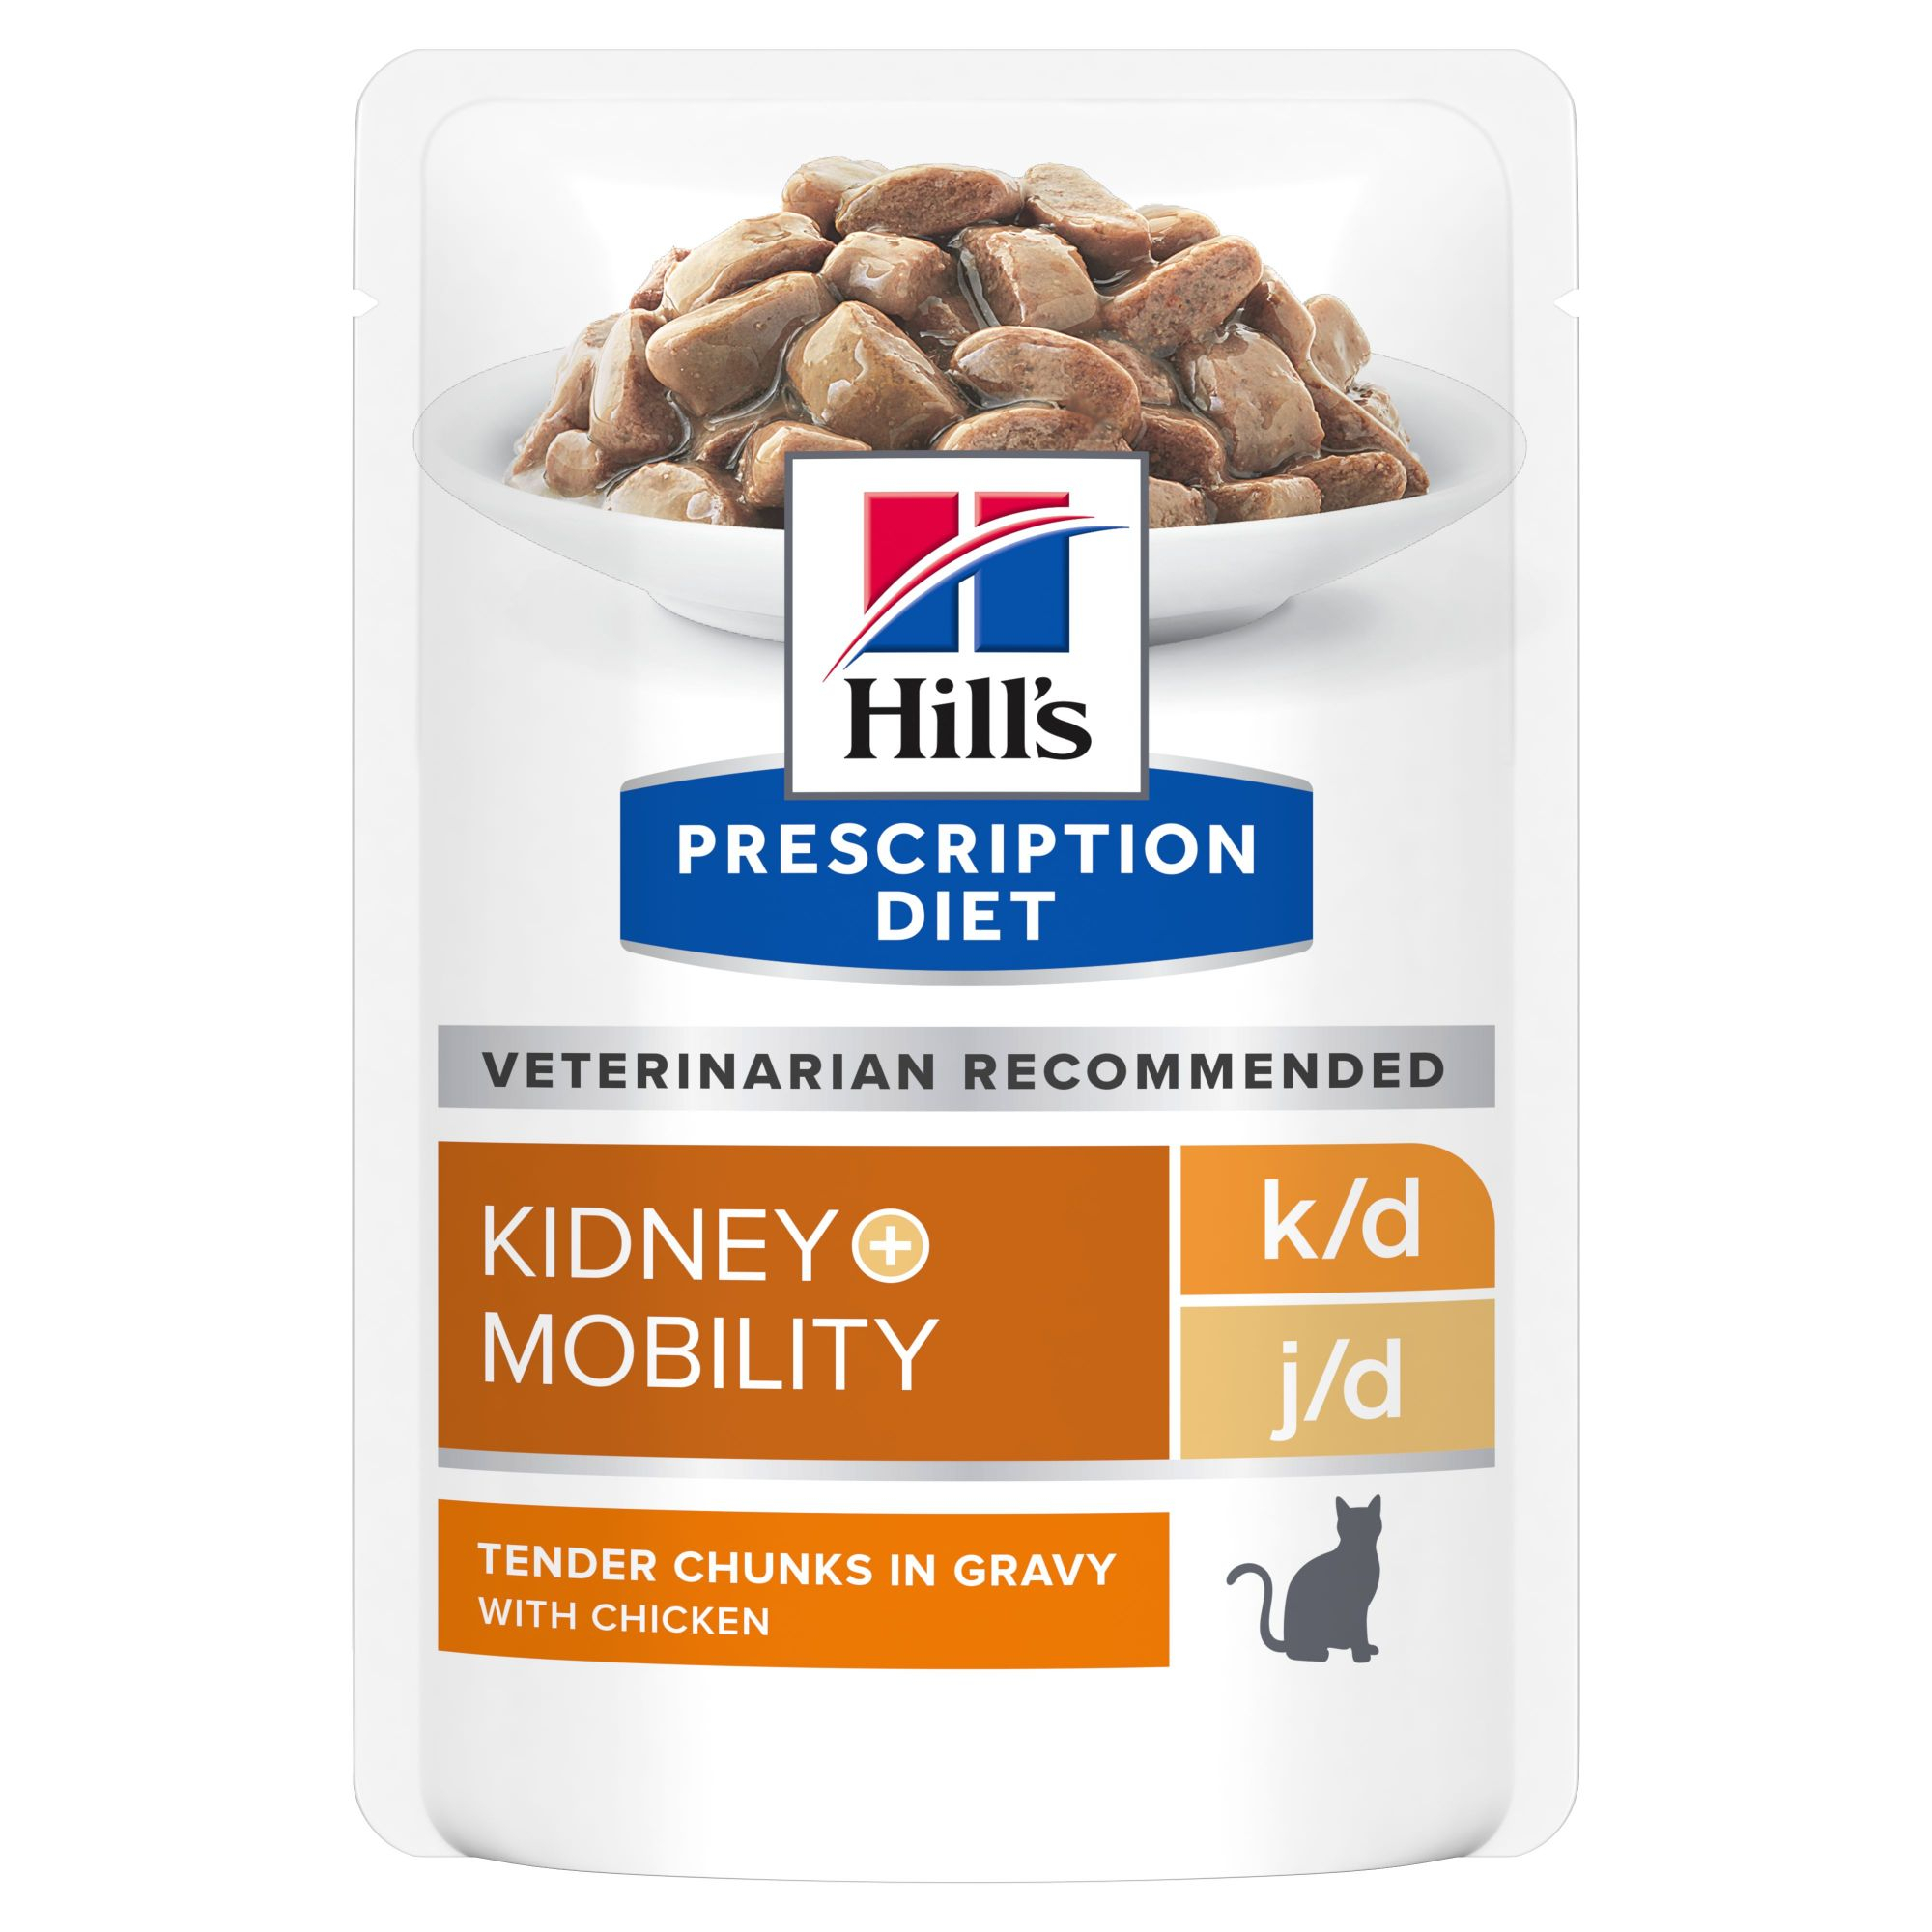 HILL'S Prescription Diet K/D + Mobility Kidney Care